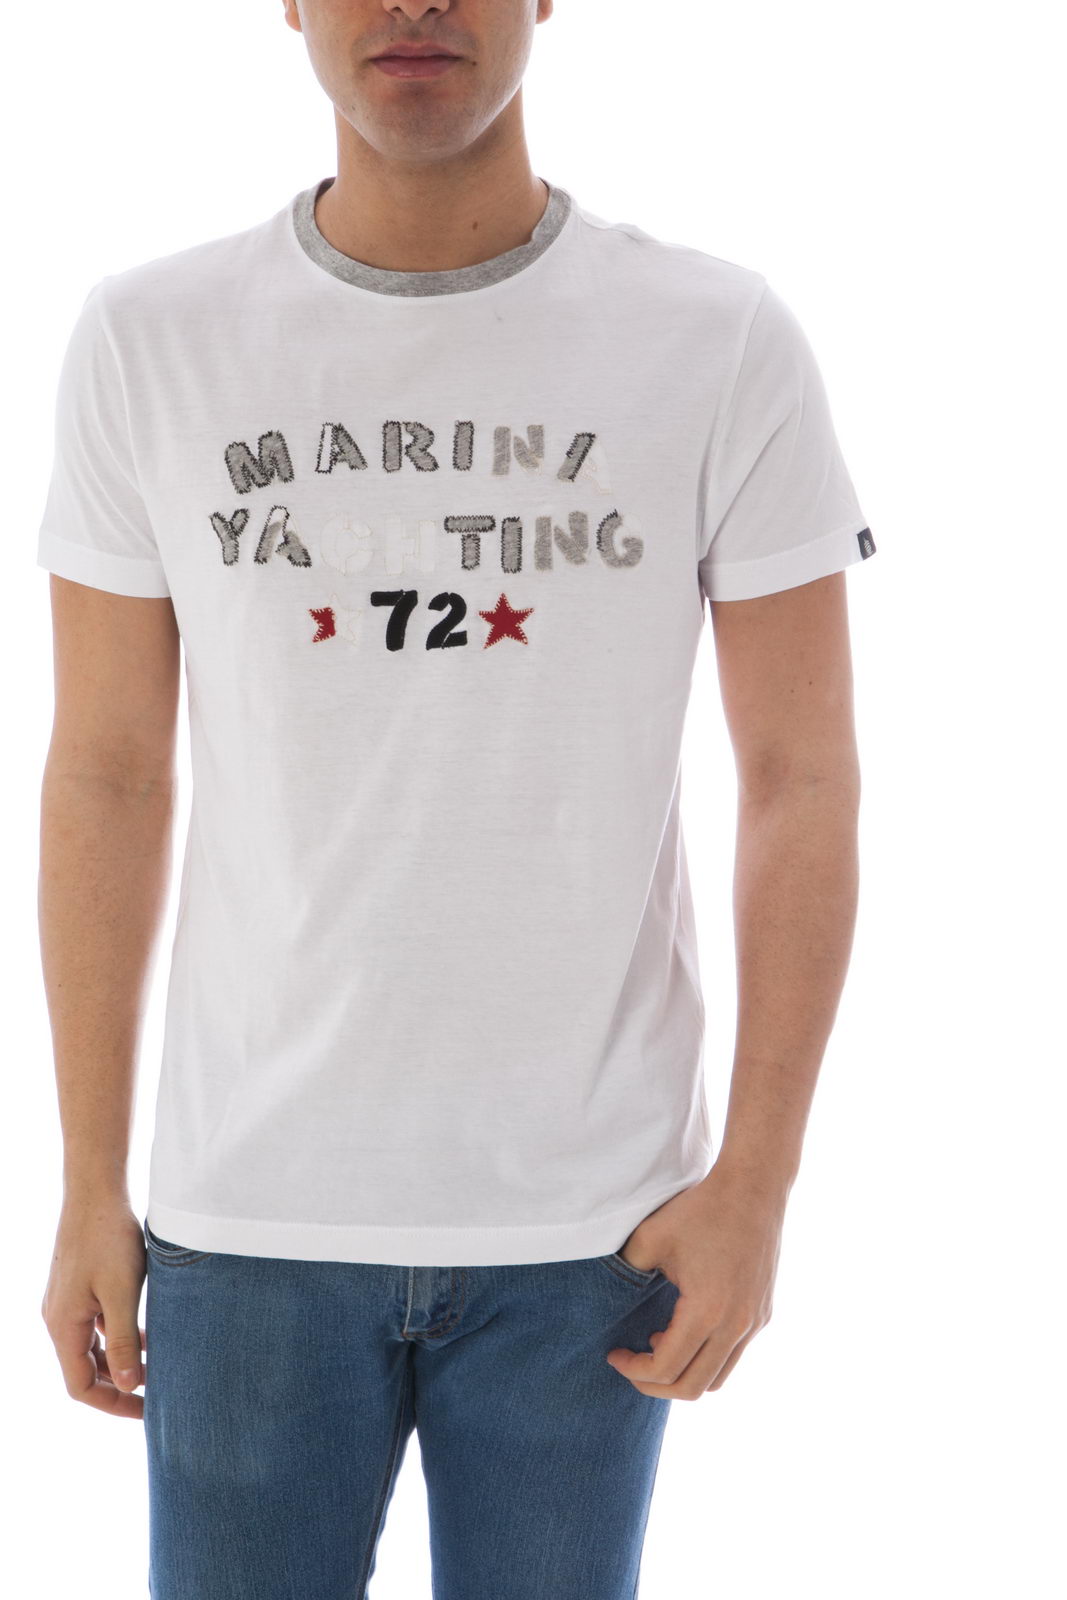 marina yachting shirt